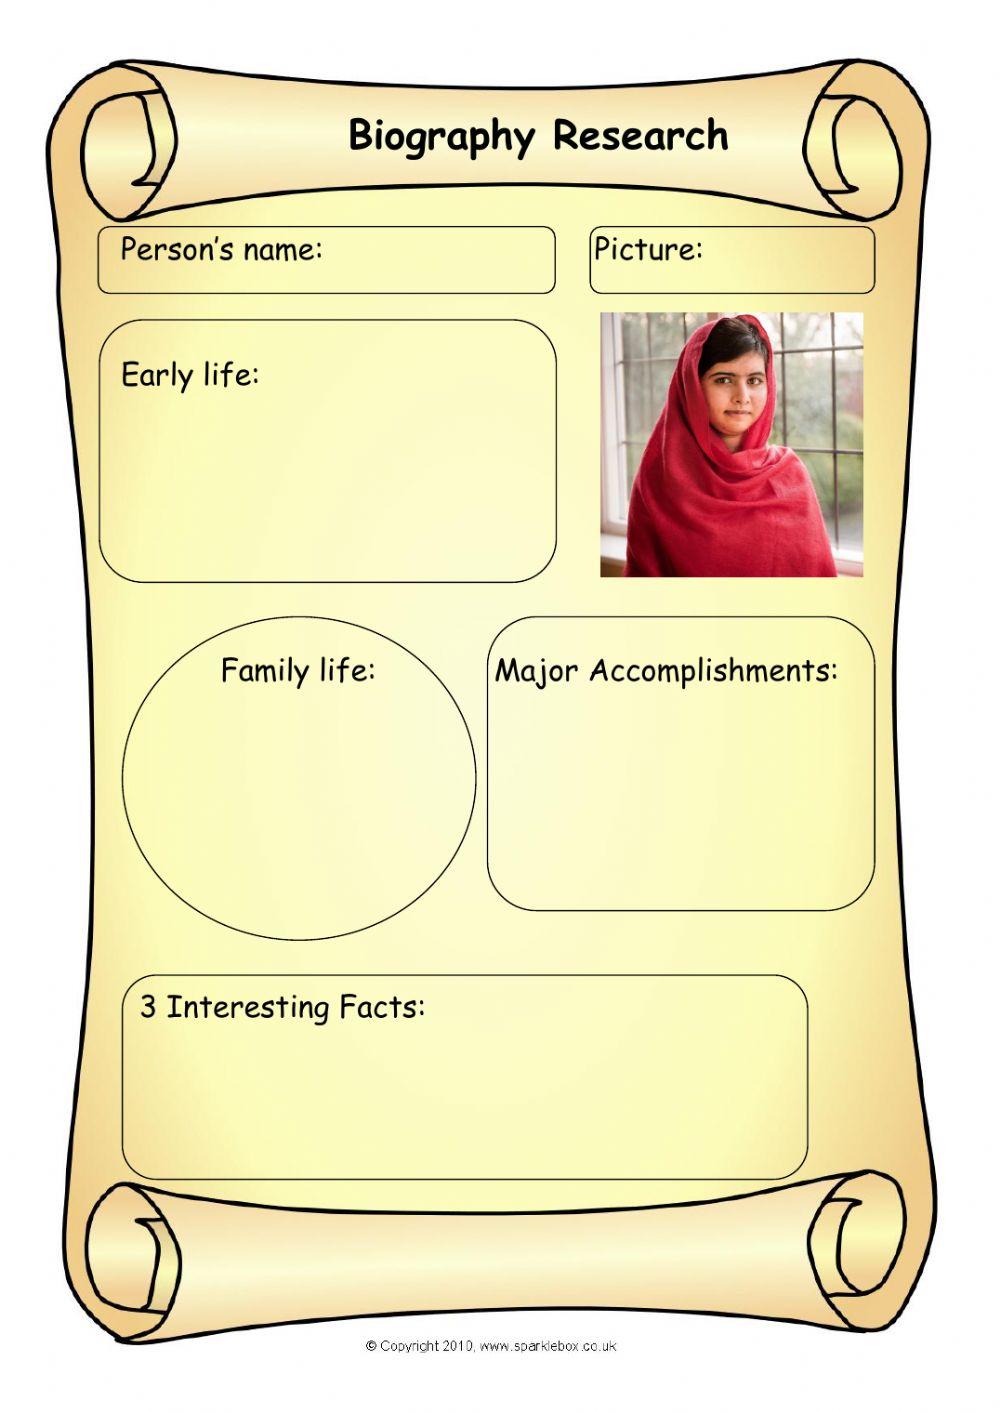 Malala Biography Research